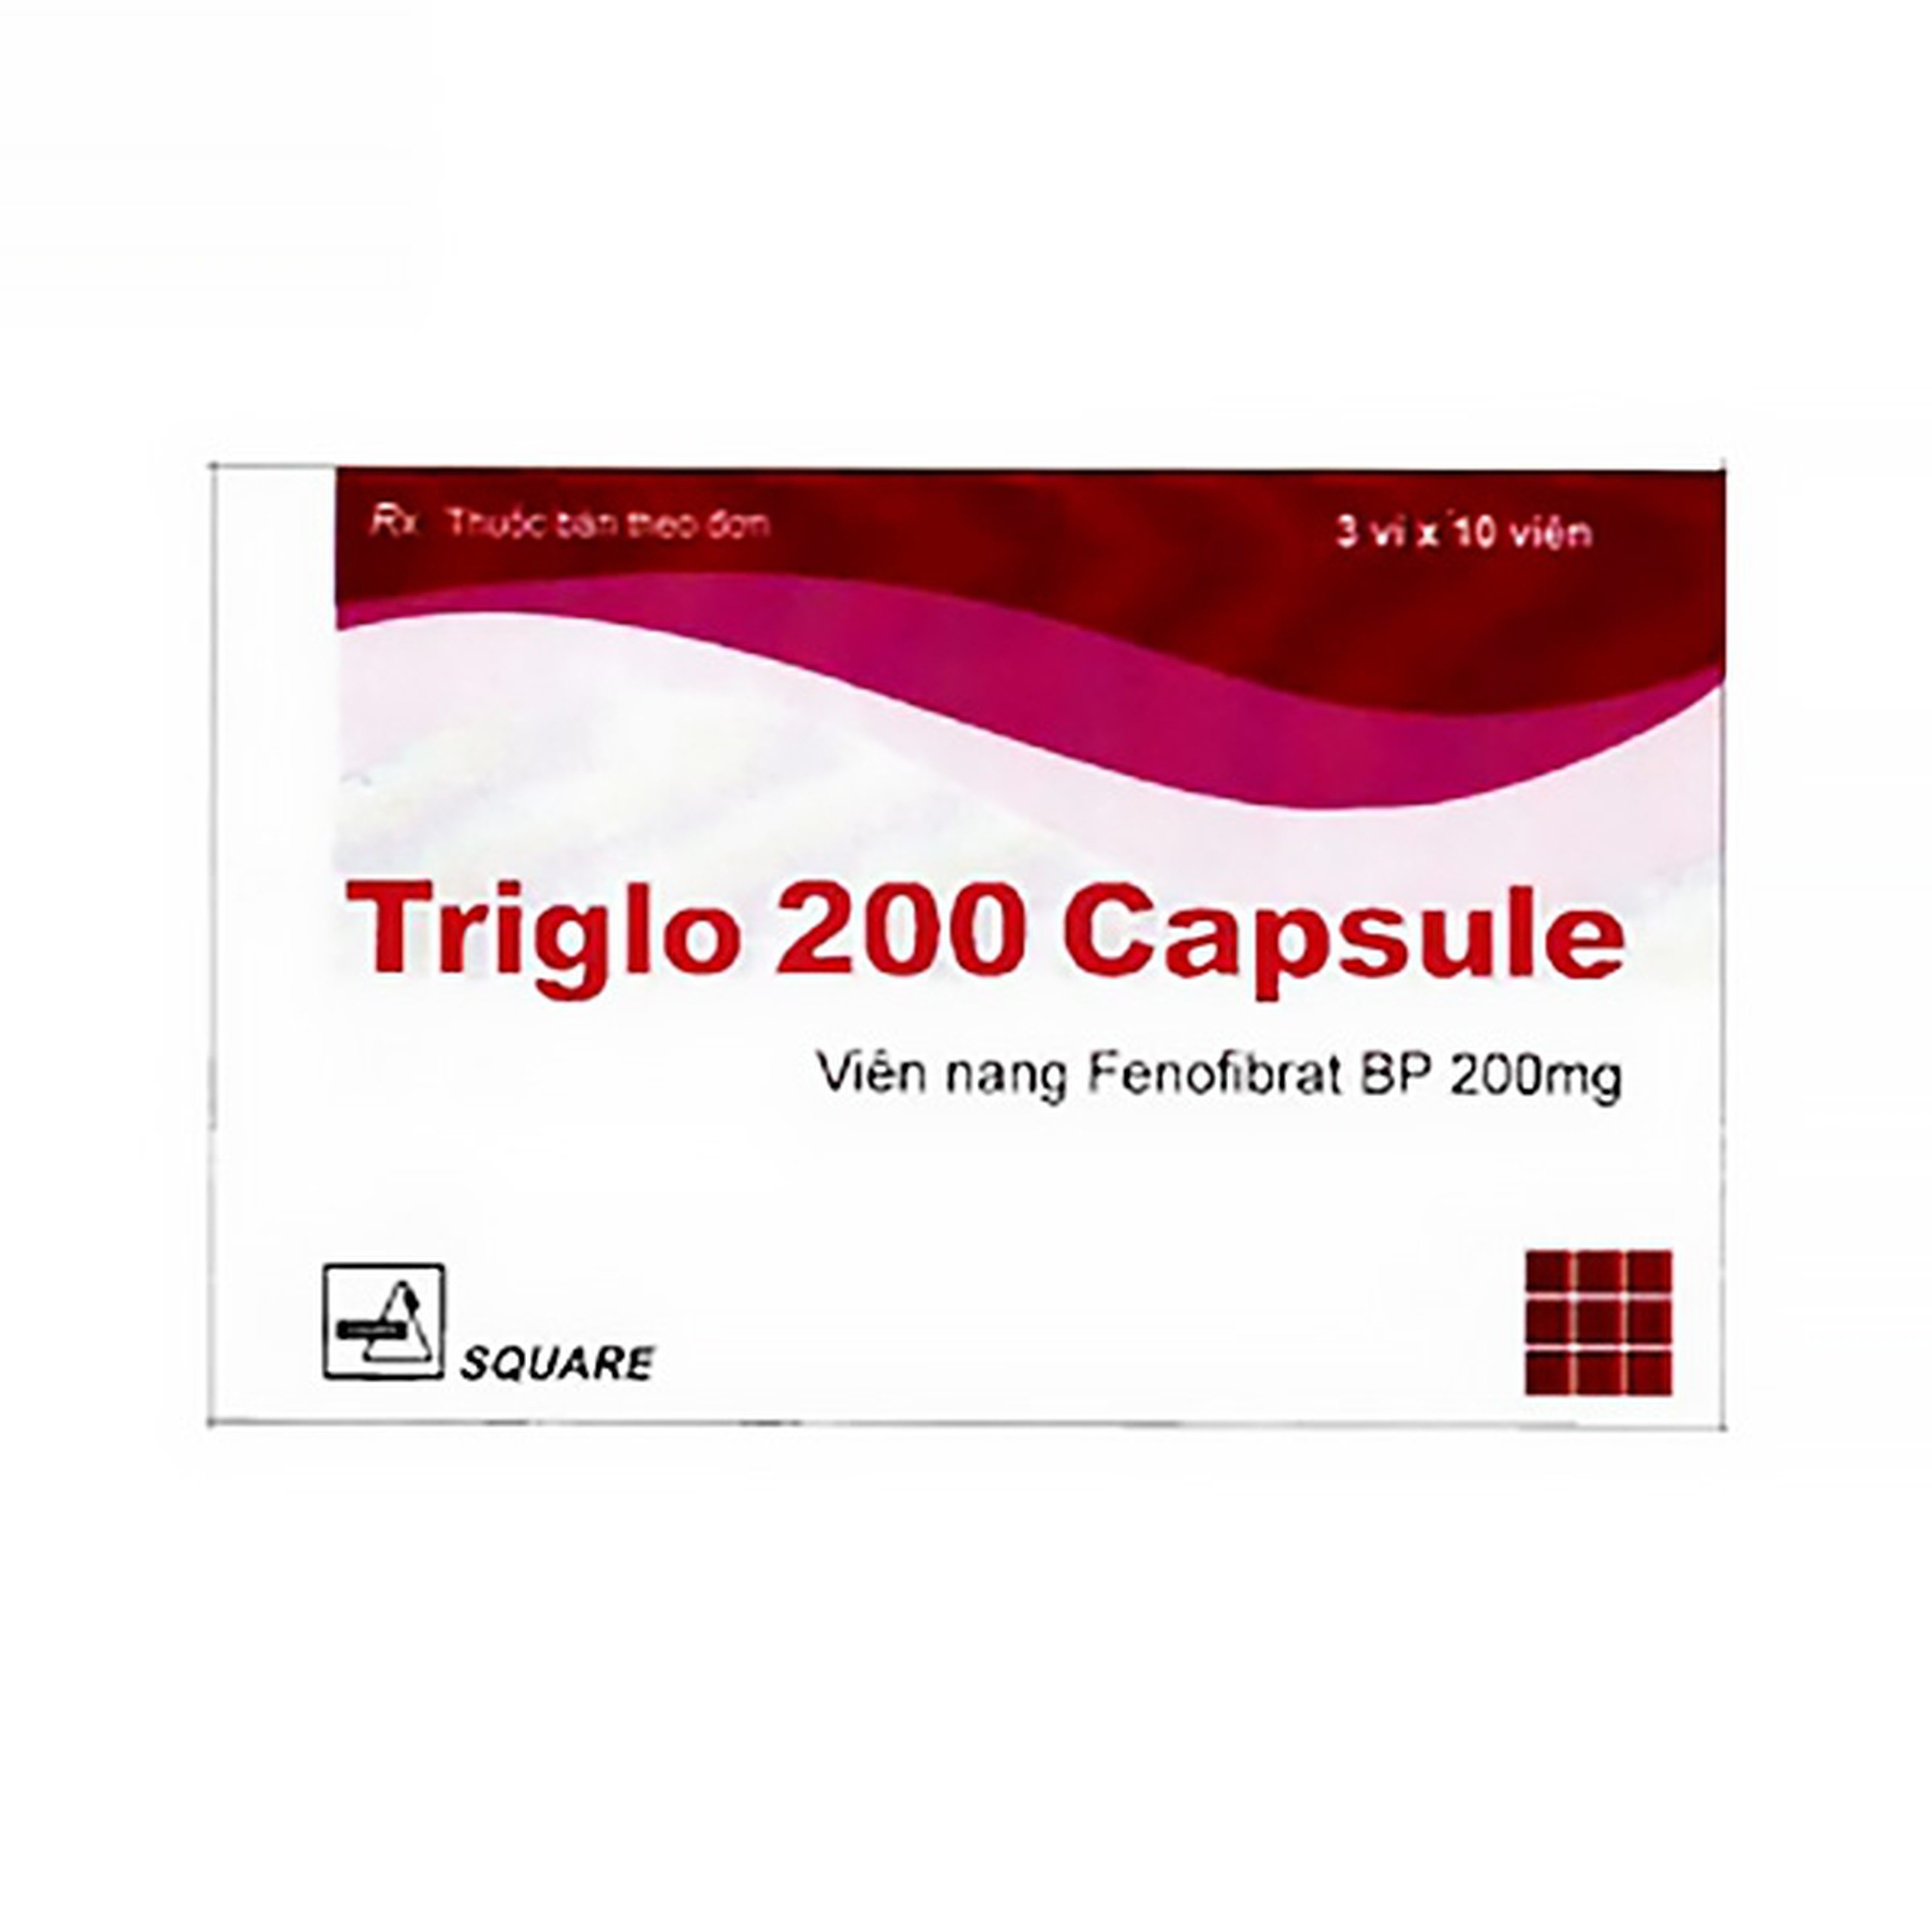 Thuốc Triglo 200 Capsule Square điều trị tăng lipid máu (3 vỉ x 10 viên)